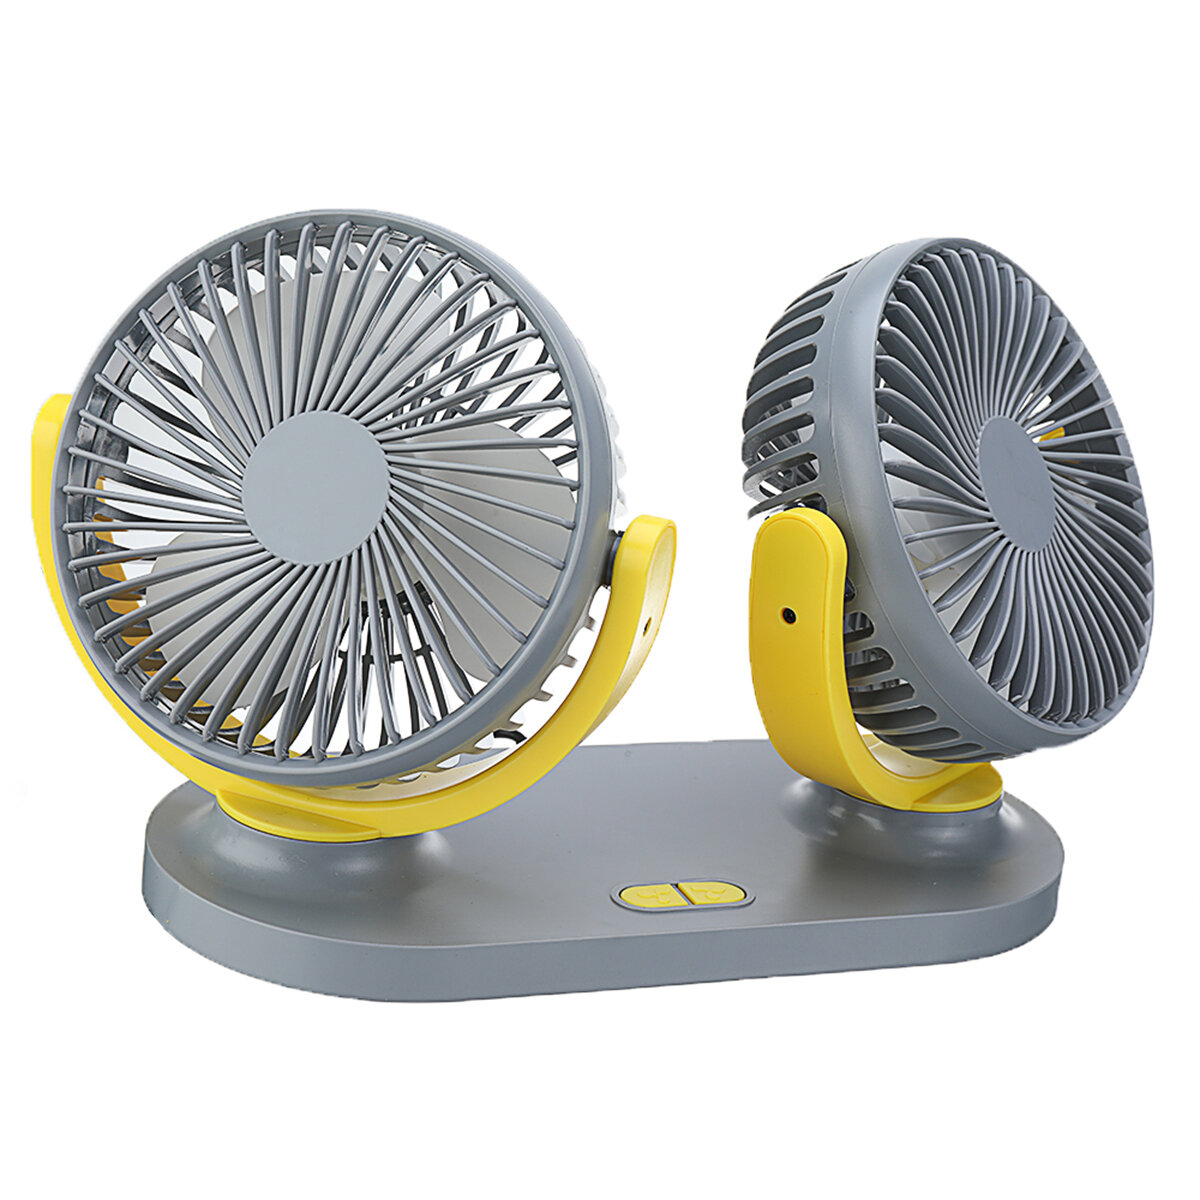 Mini-Dual-Head-Fan für Auto, Zuhause, leiser Kühler, USB-aufladbar, für Outdoor-Camping und Reisen